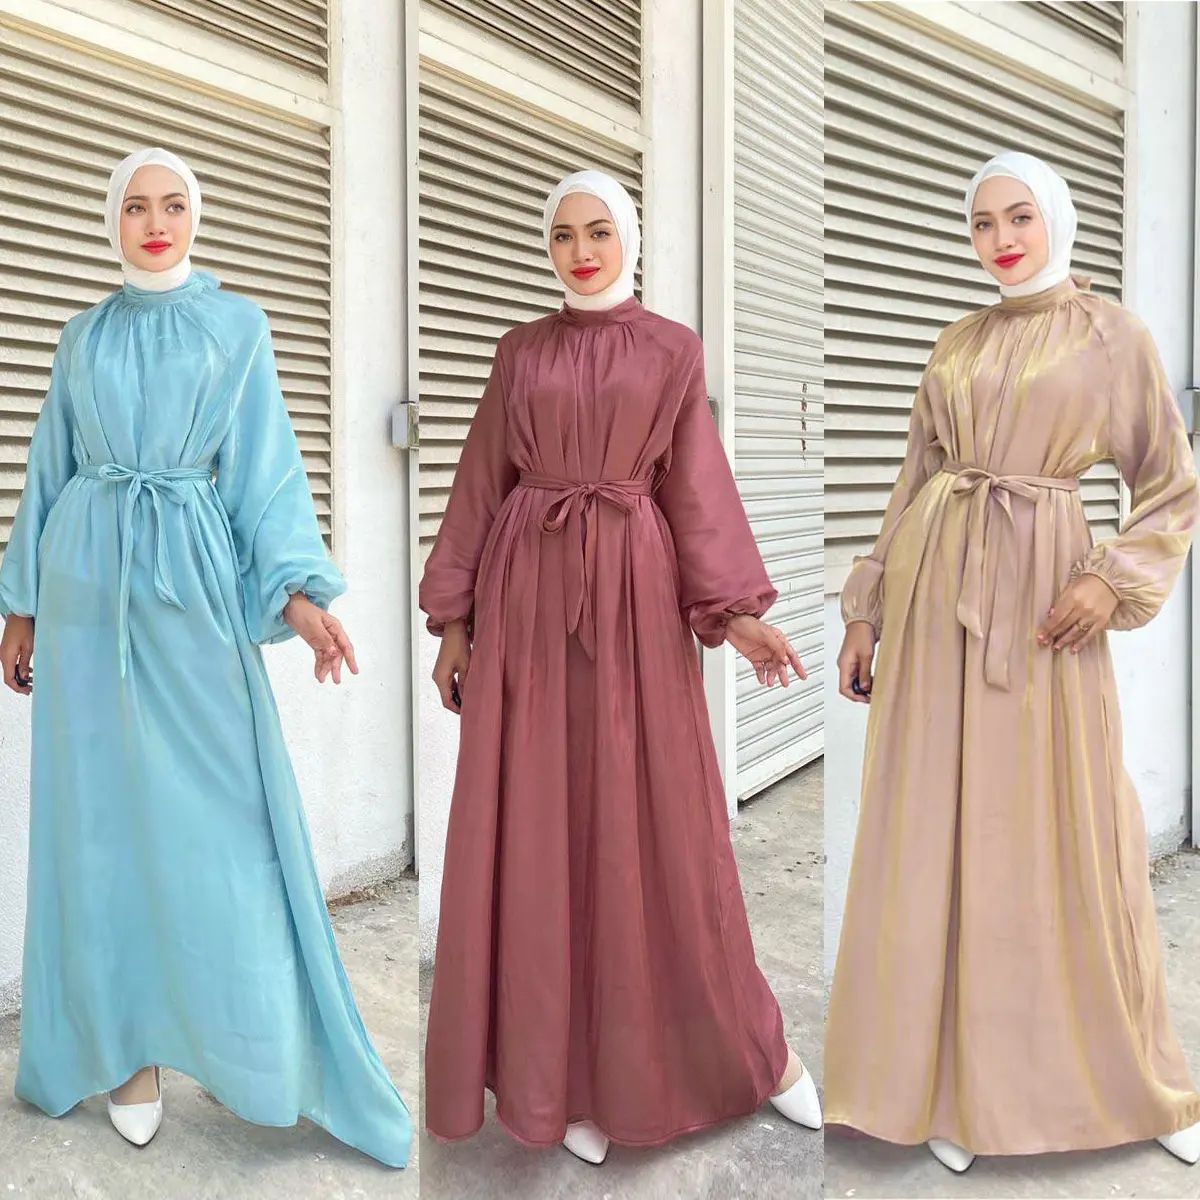 OUDINA medio oriente Robe Malay indonesiano Casual elegante abiti da donna Abaya abito musulmano da donna